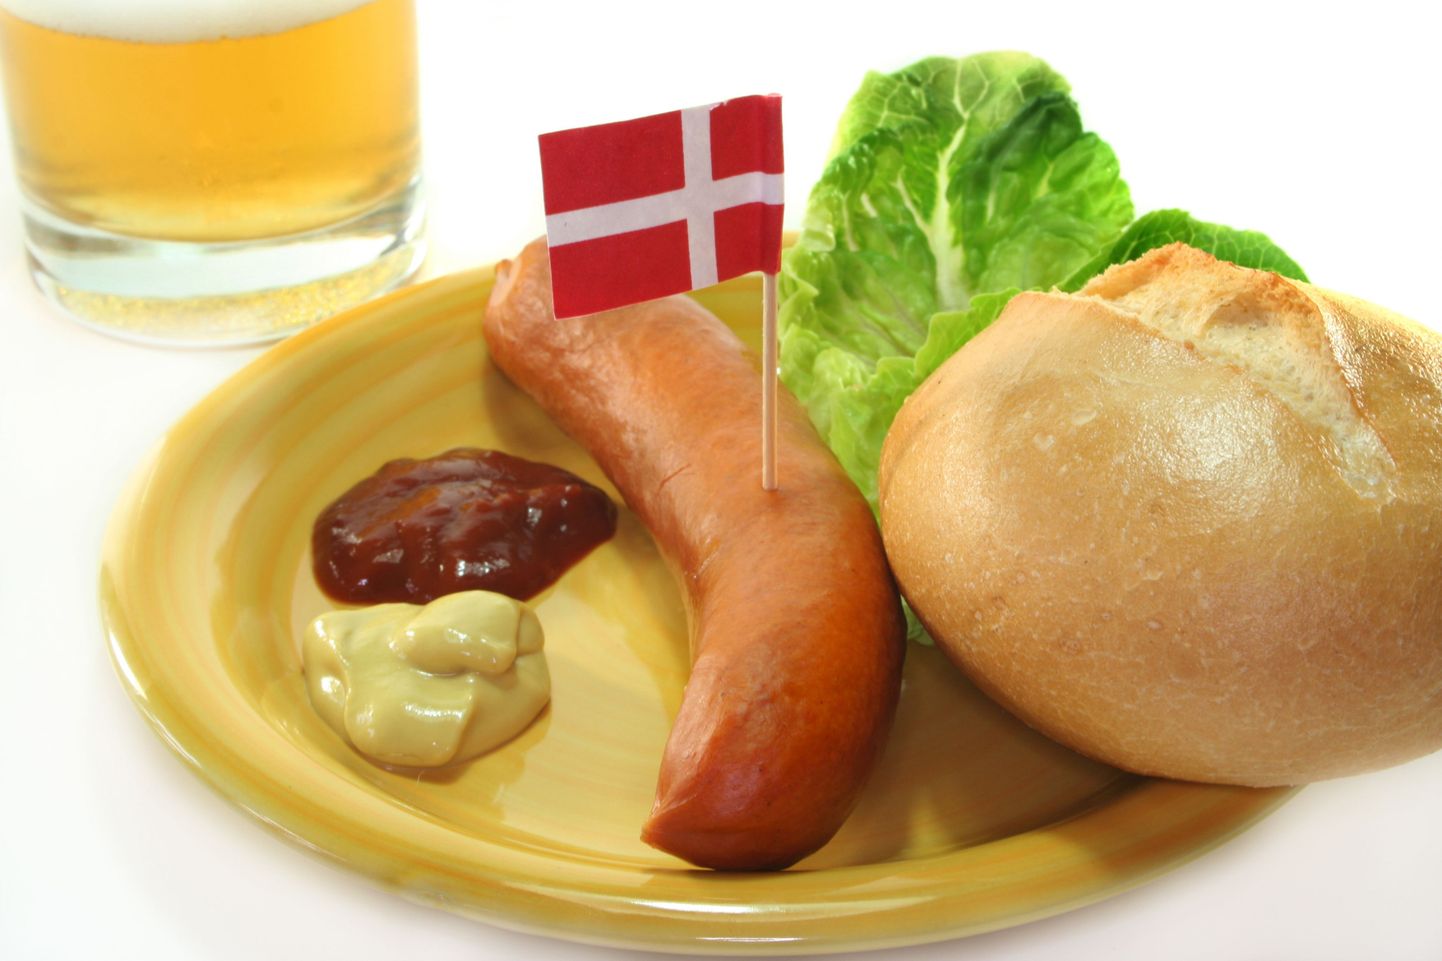 Taani tahab aastaks 2019 kehtestada 25 protsenti kõrgema käibemaksu kõikidele rasvastele toiduainetele.